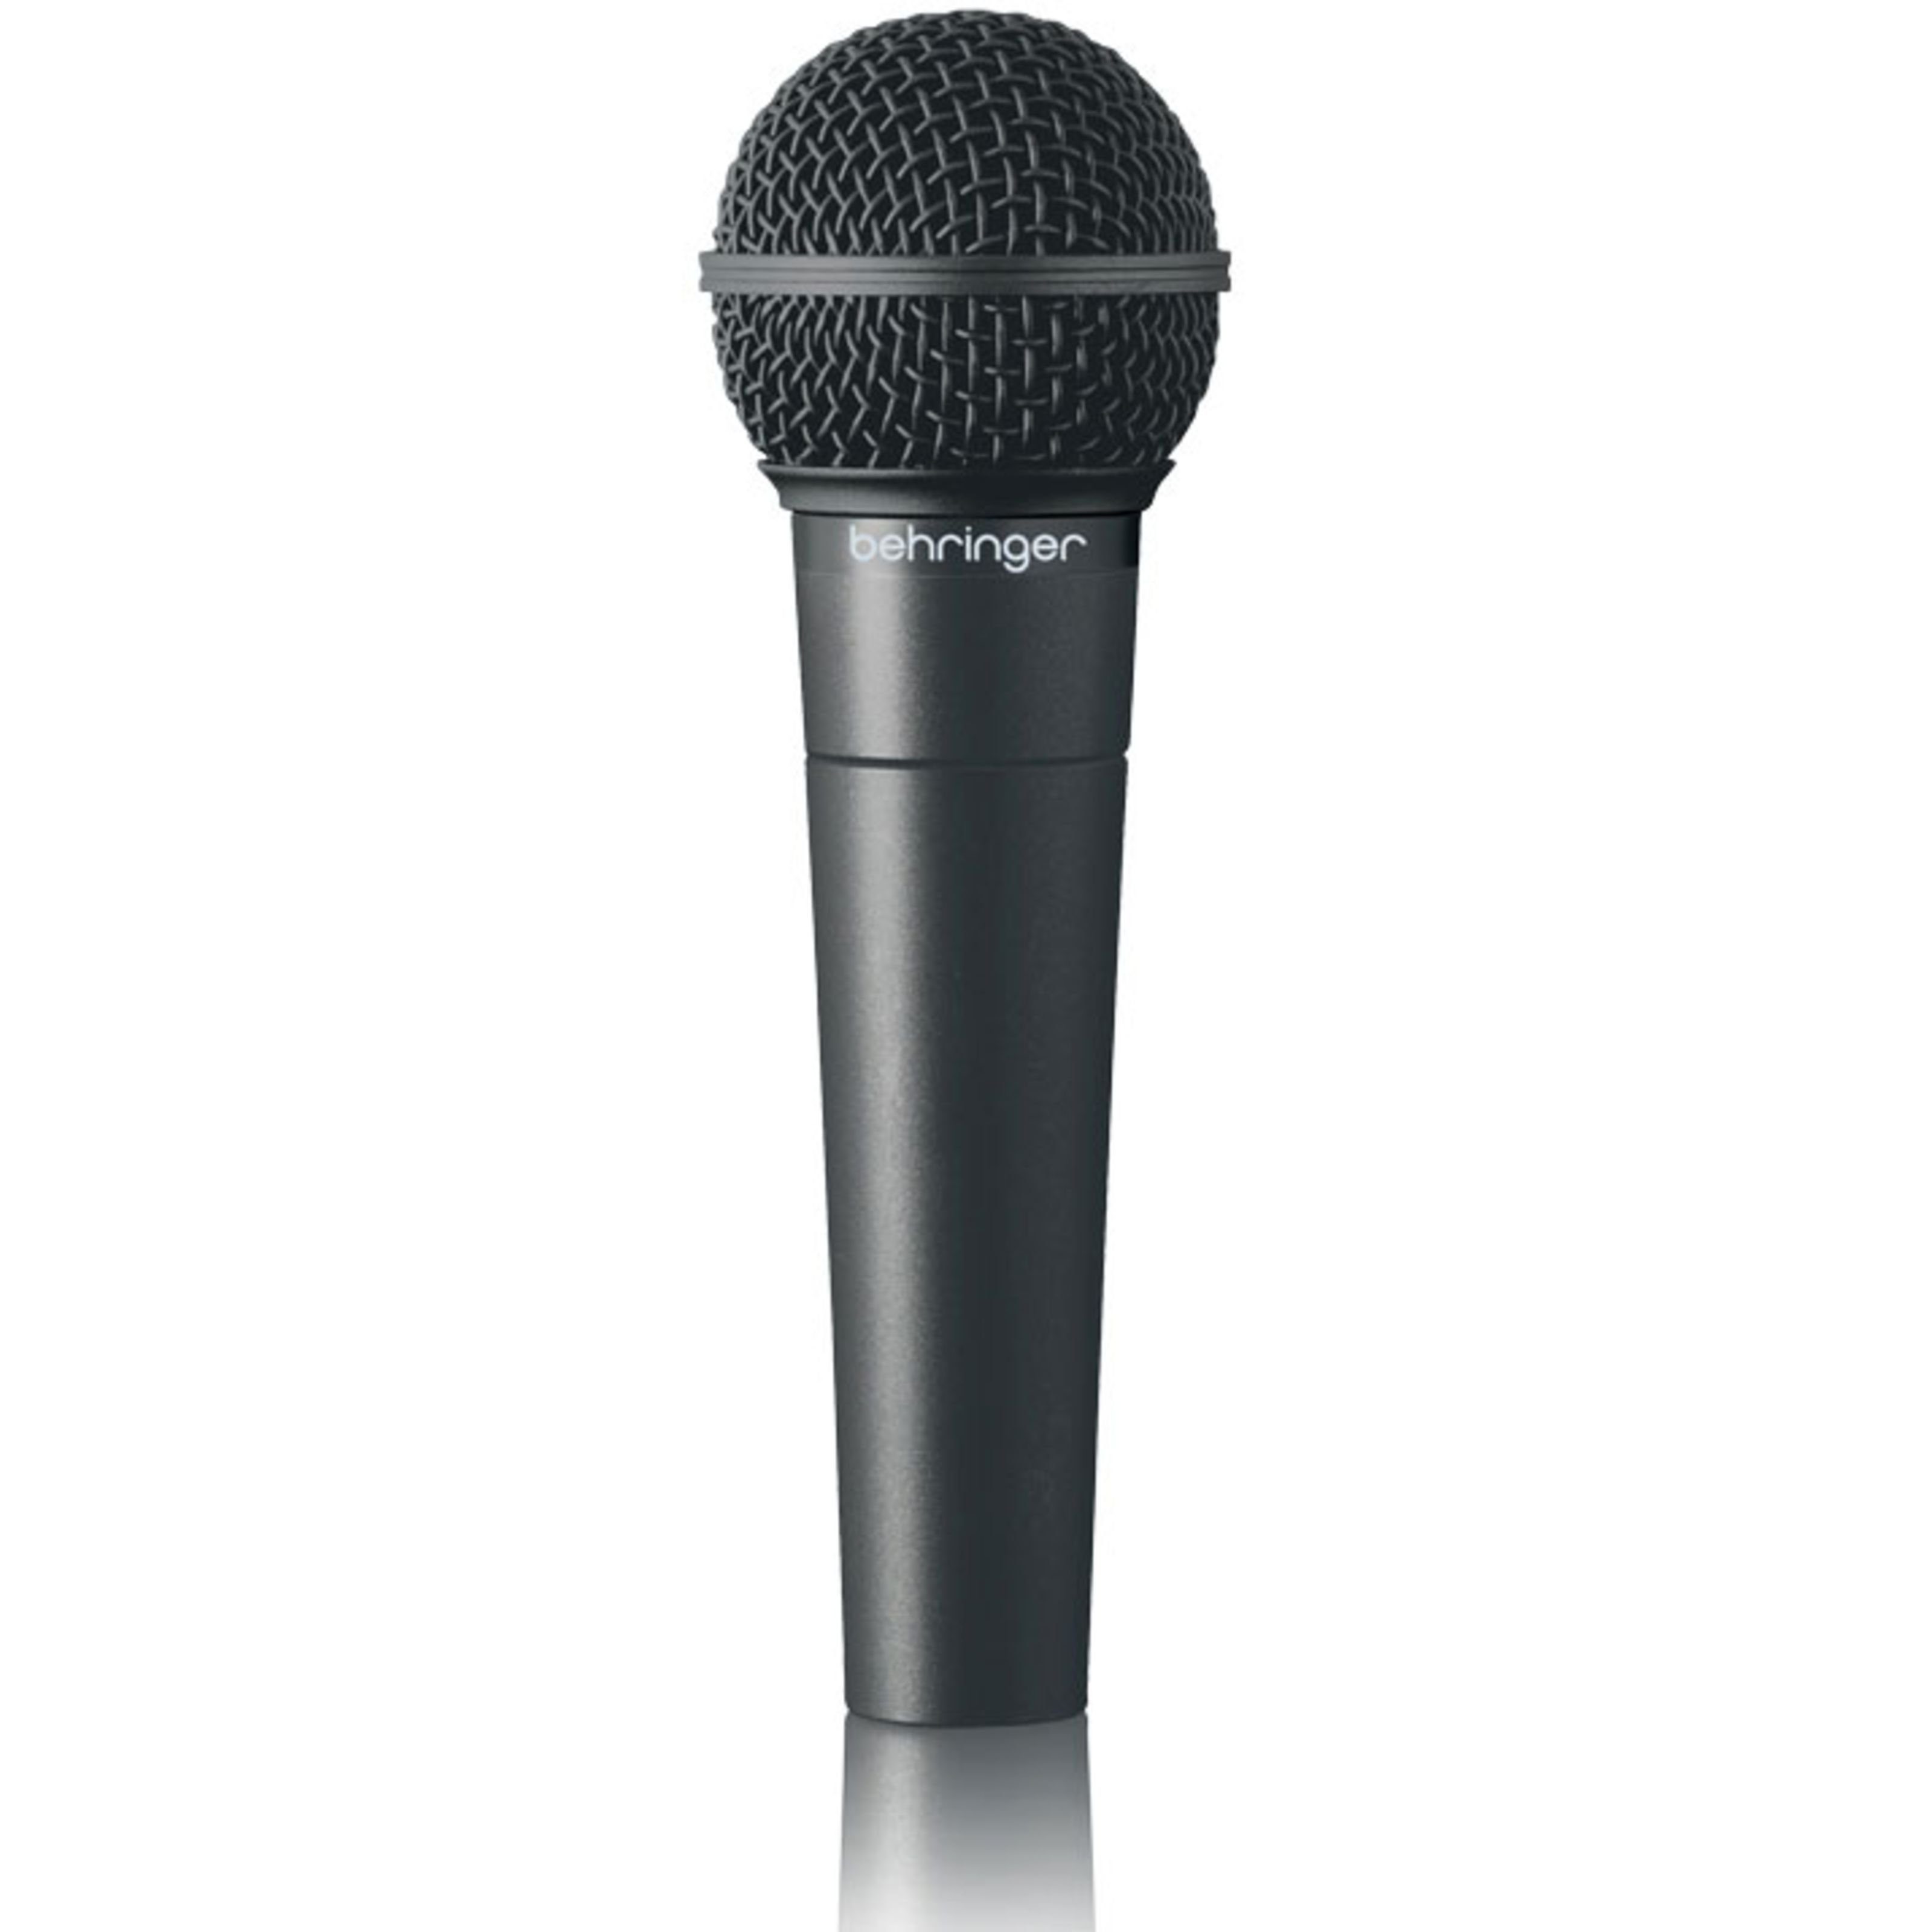 Behringer Mikrofon, XM8500 ULTRAVOICE - Gesangsmikrofon